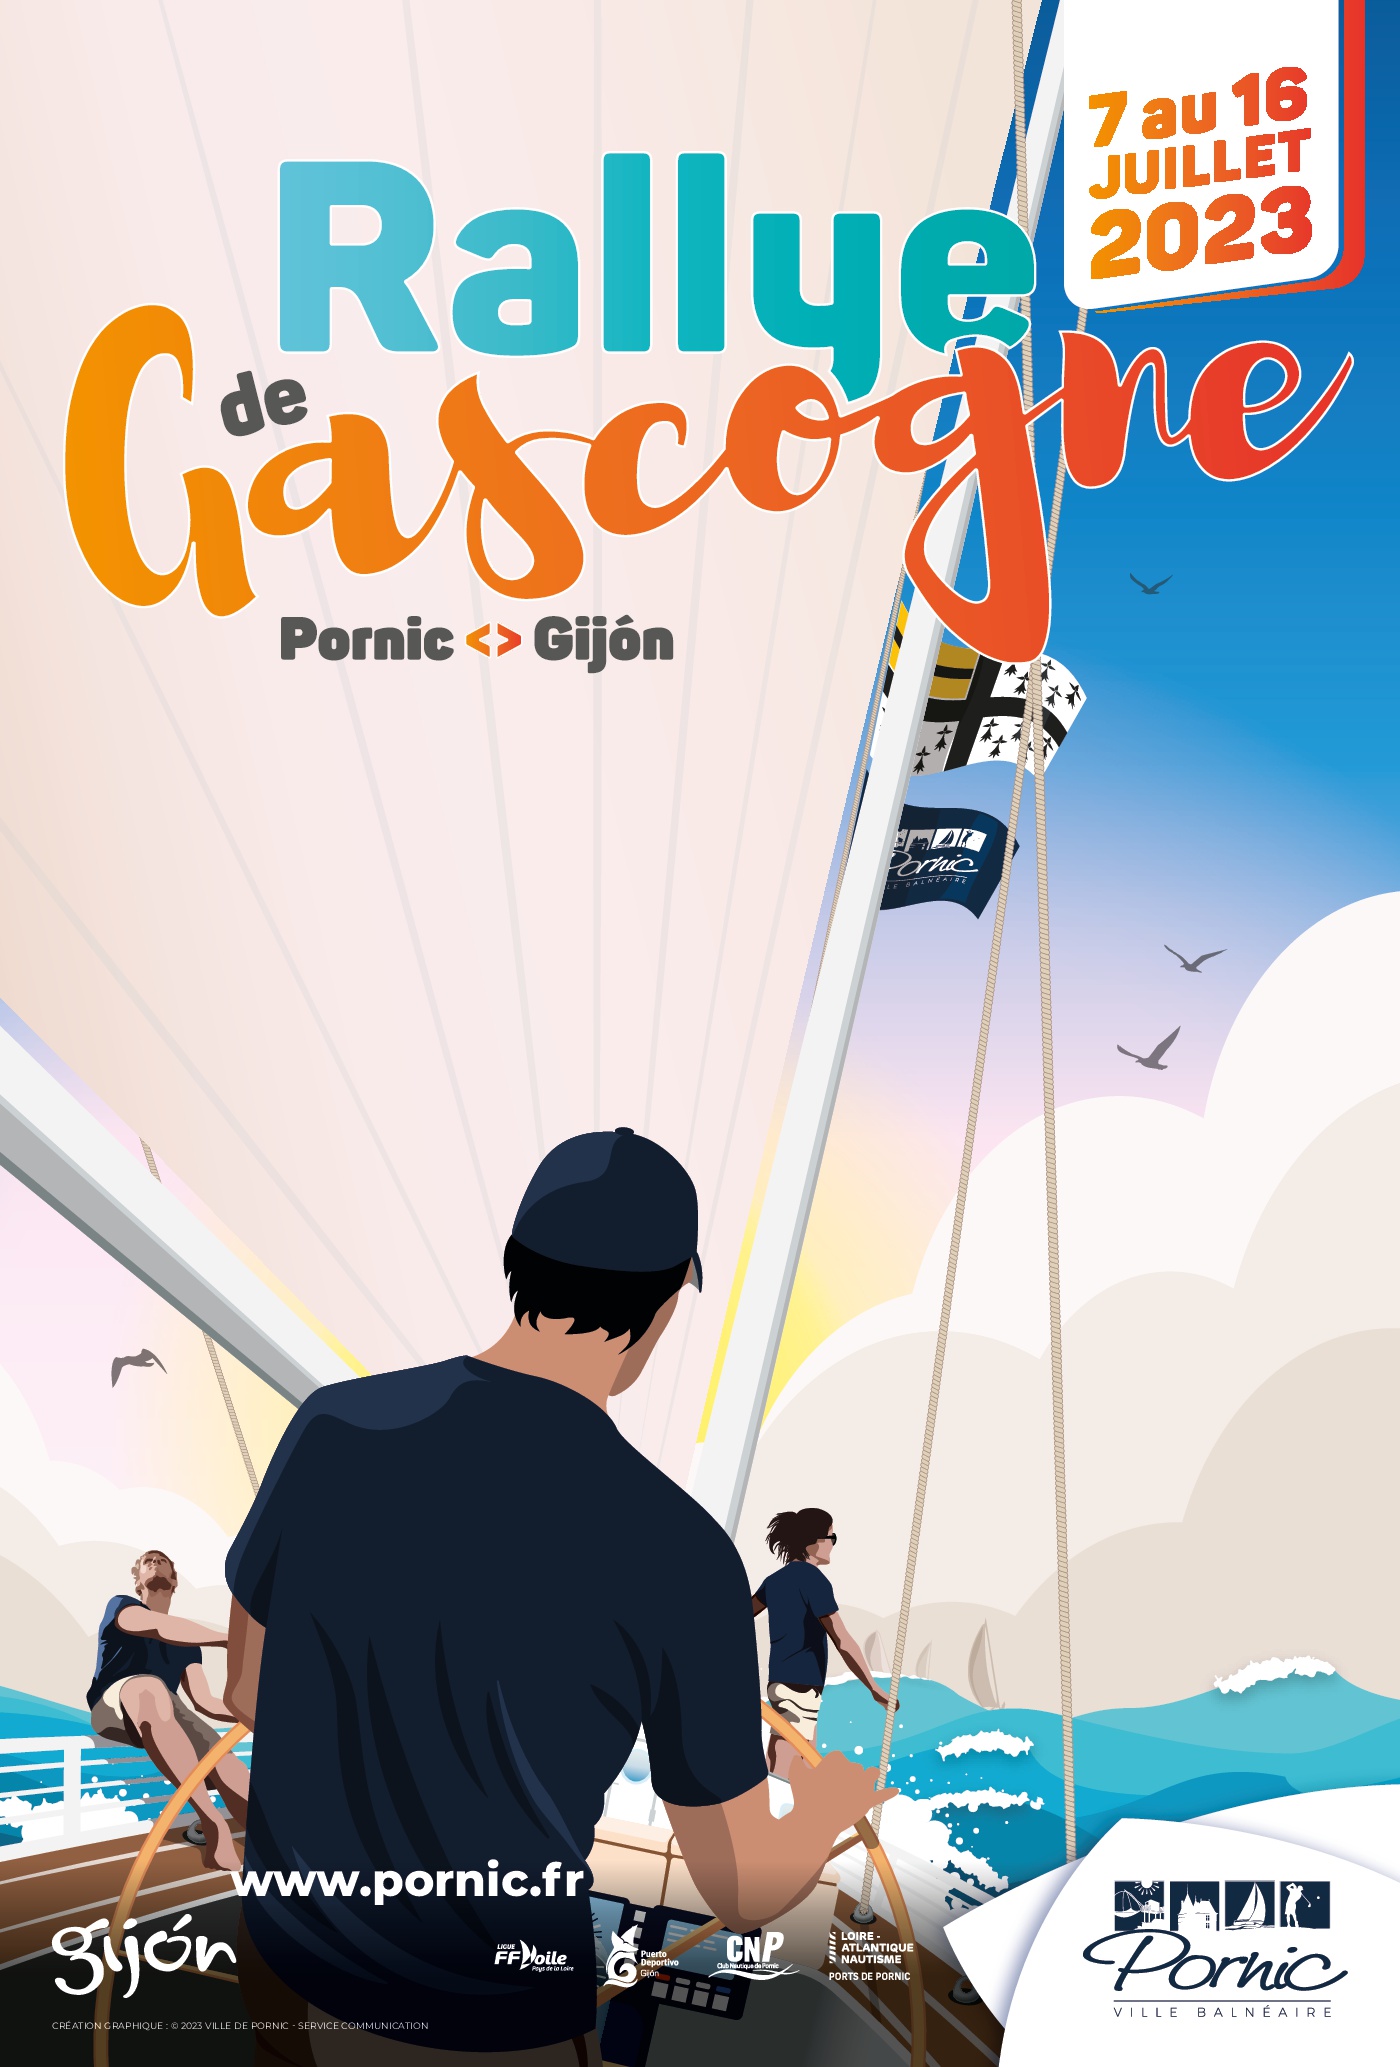 Rallye de Gascogne 2023 – Pornic <> Gijón